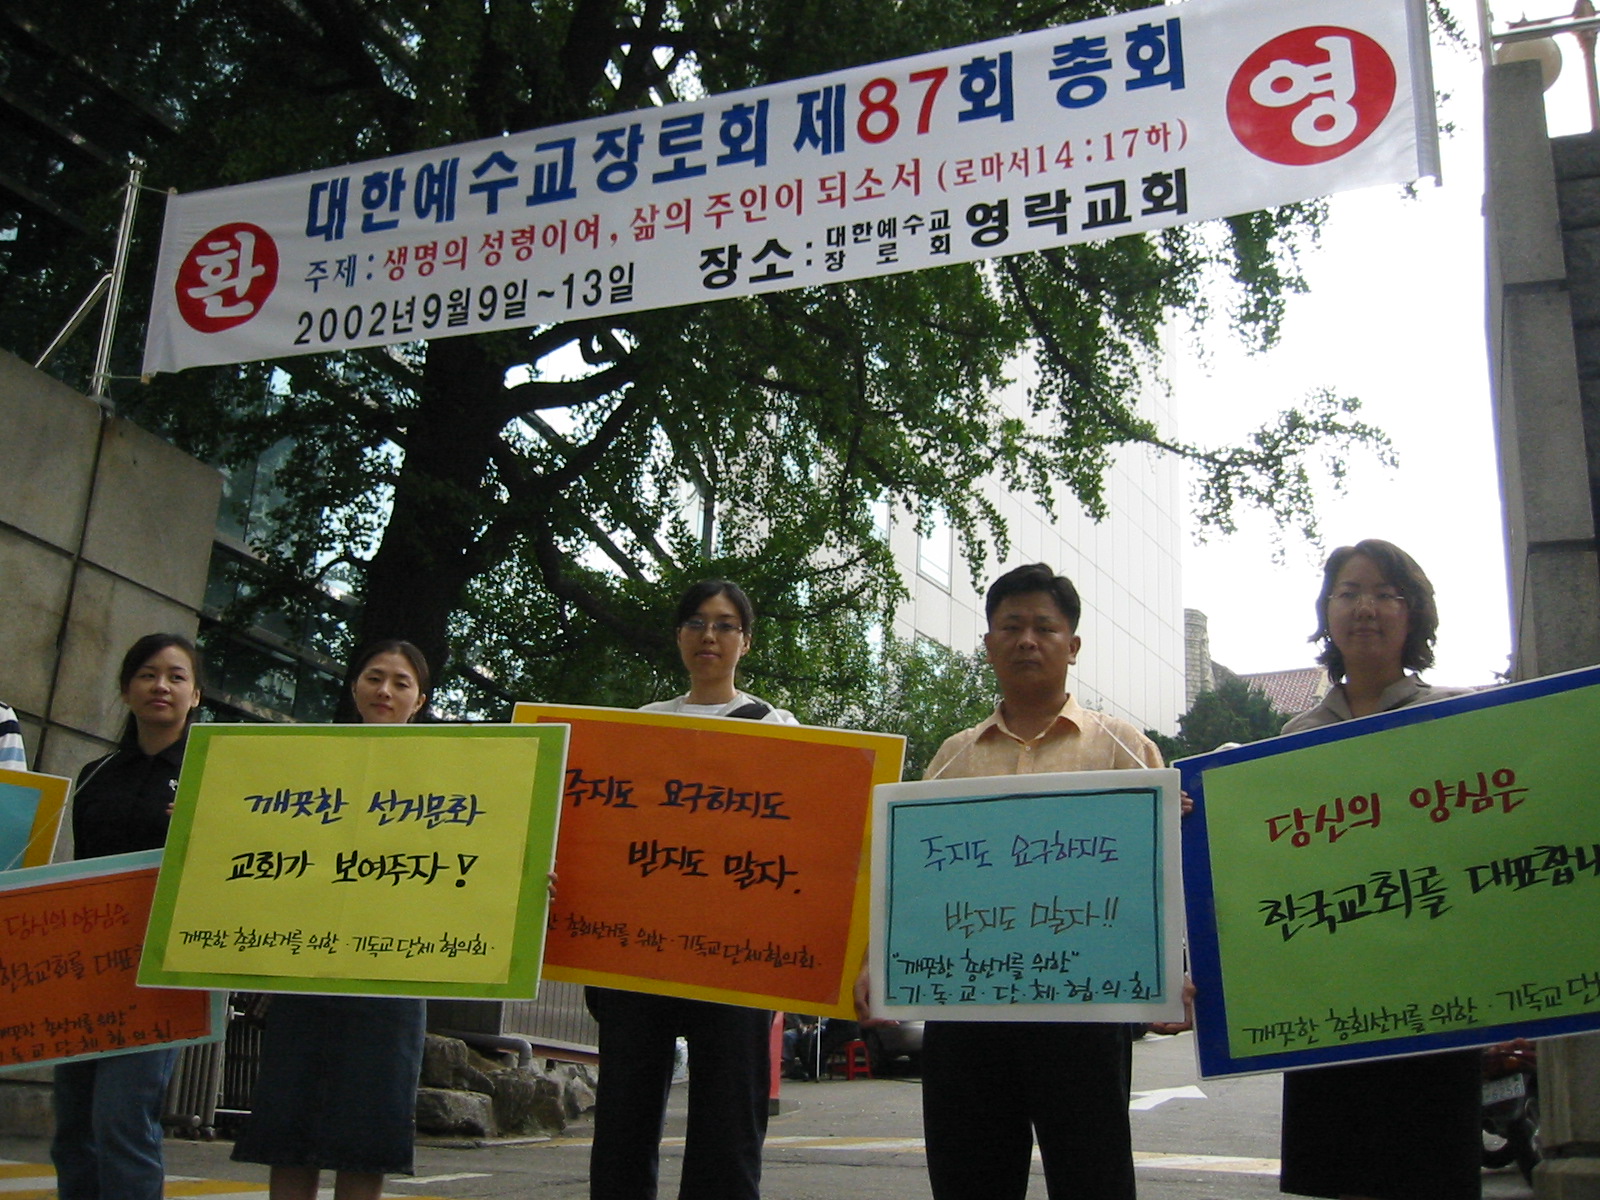 2002-깨끗한 총회 캠페인